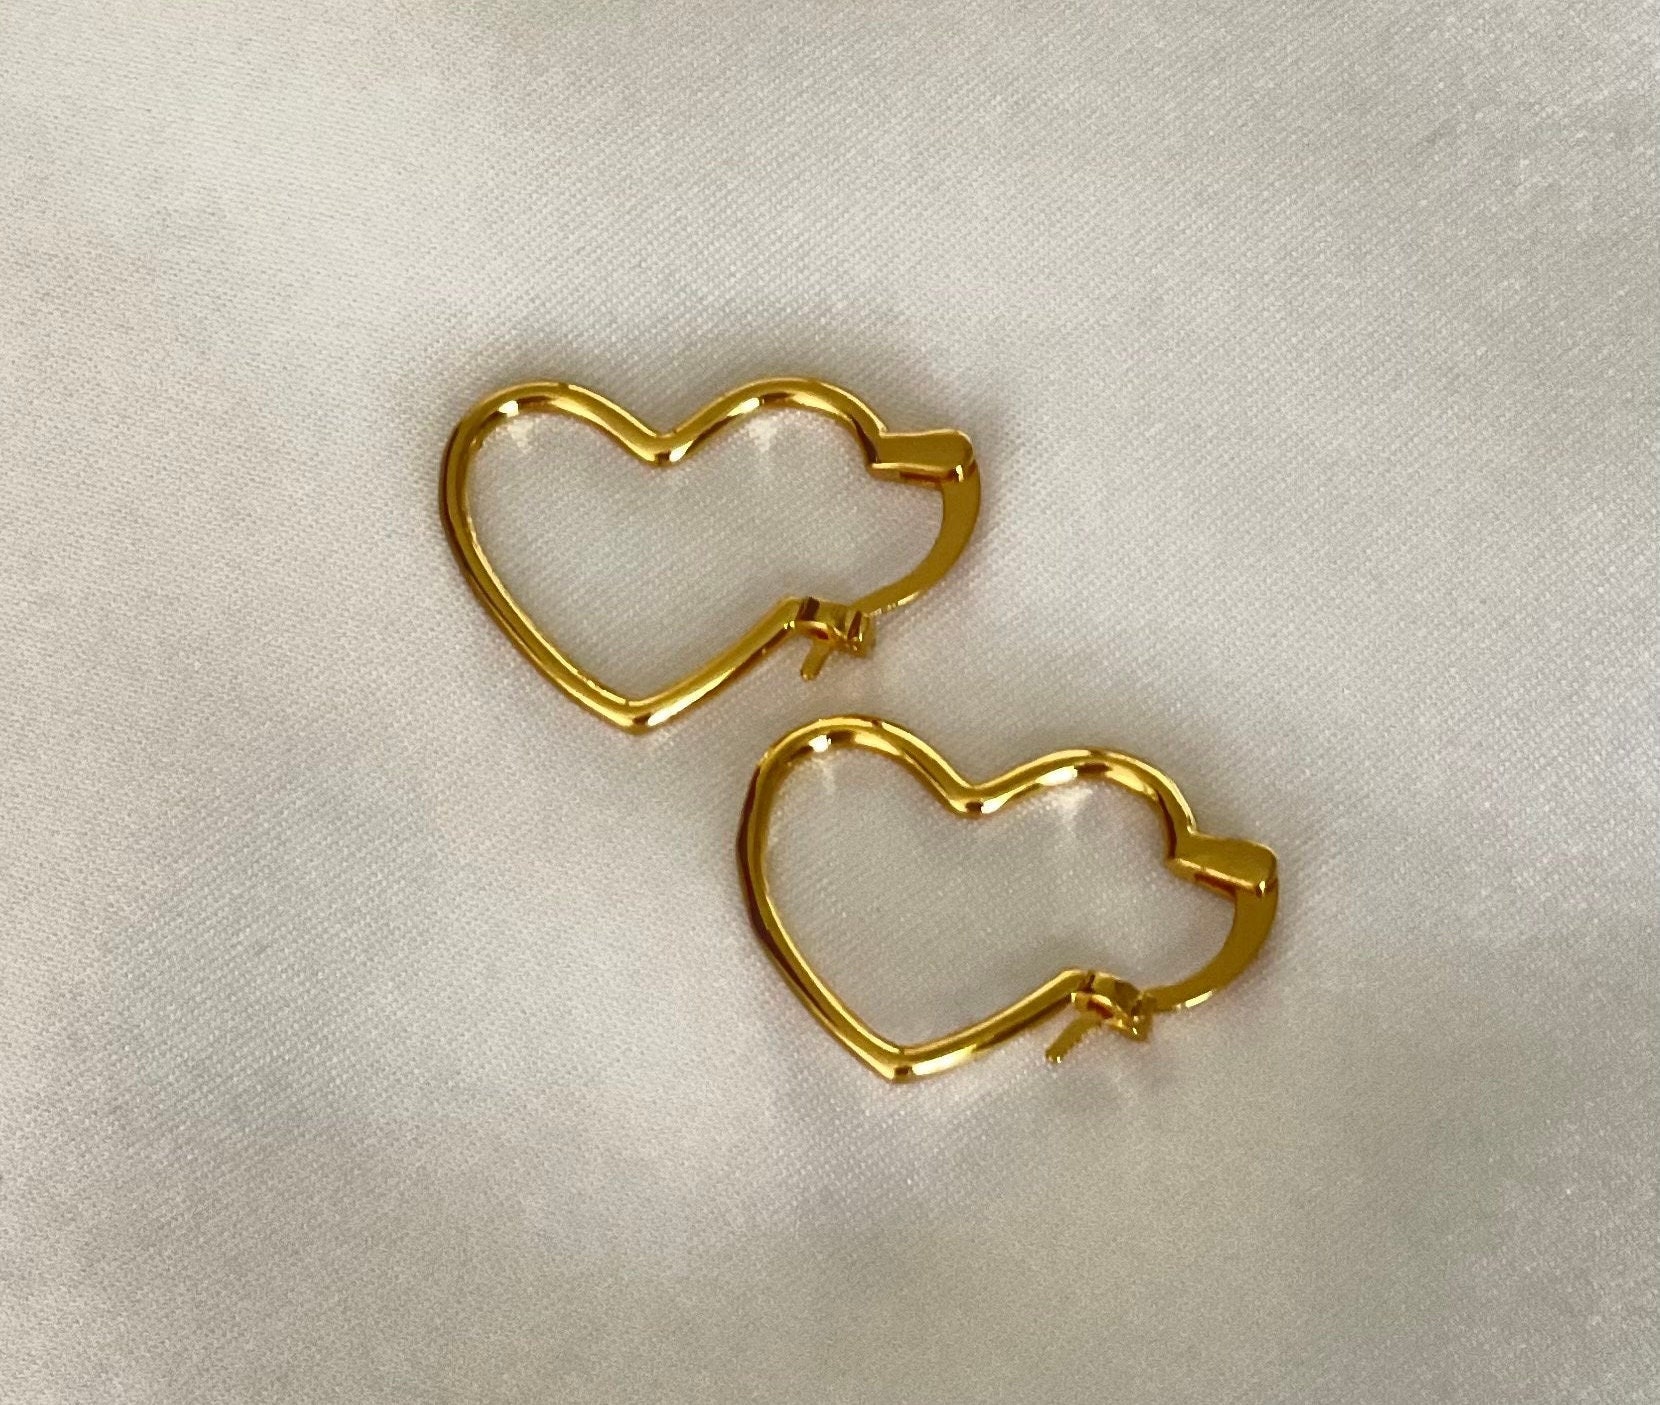 Heart Hoops 18K Gold Filled Earrings Heart Earrings | Etsy